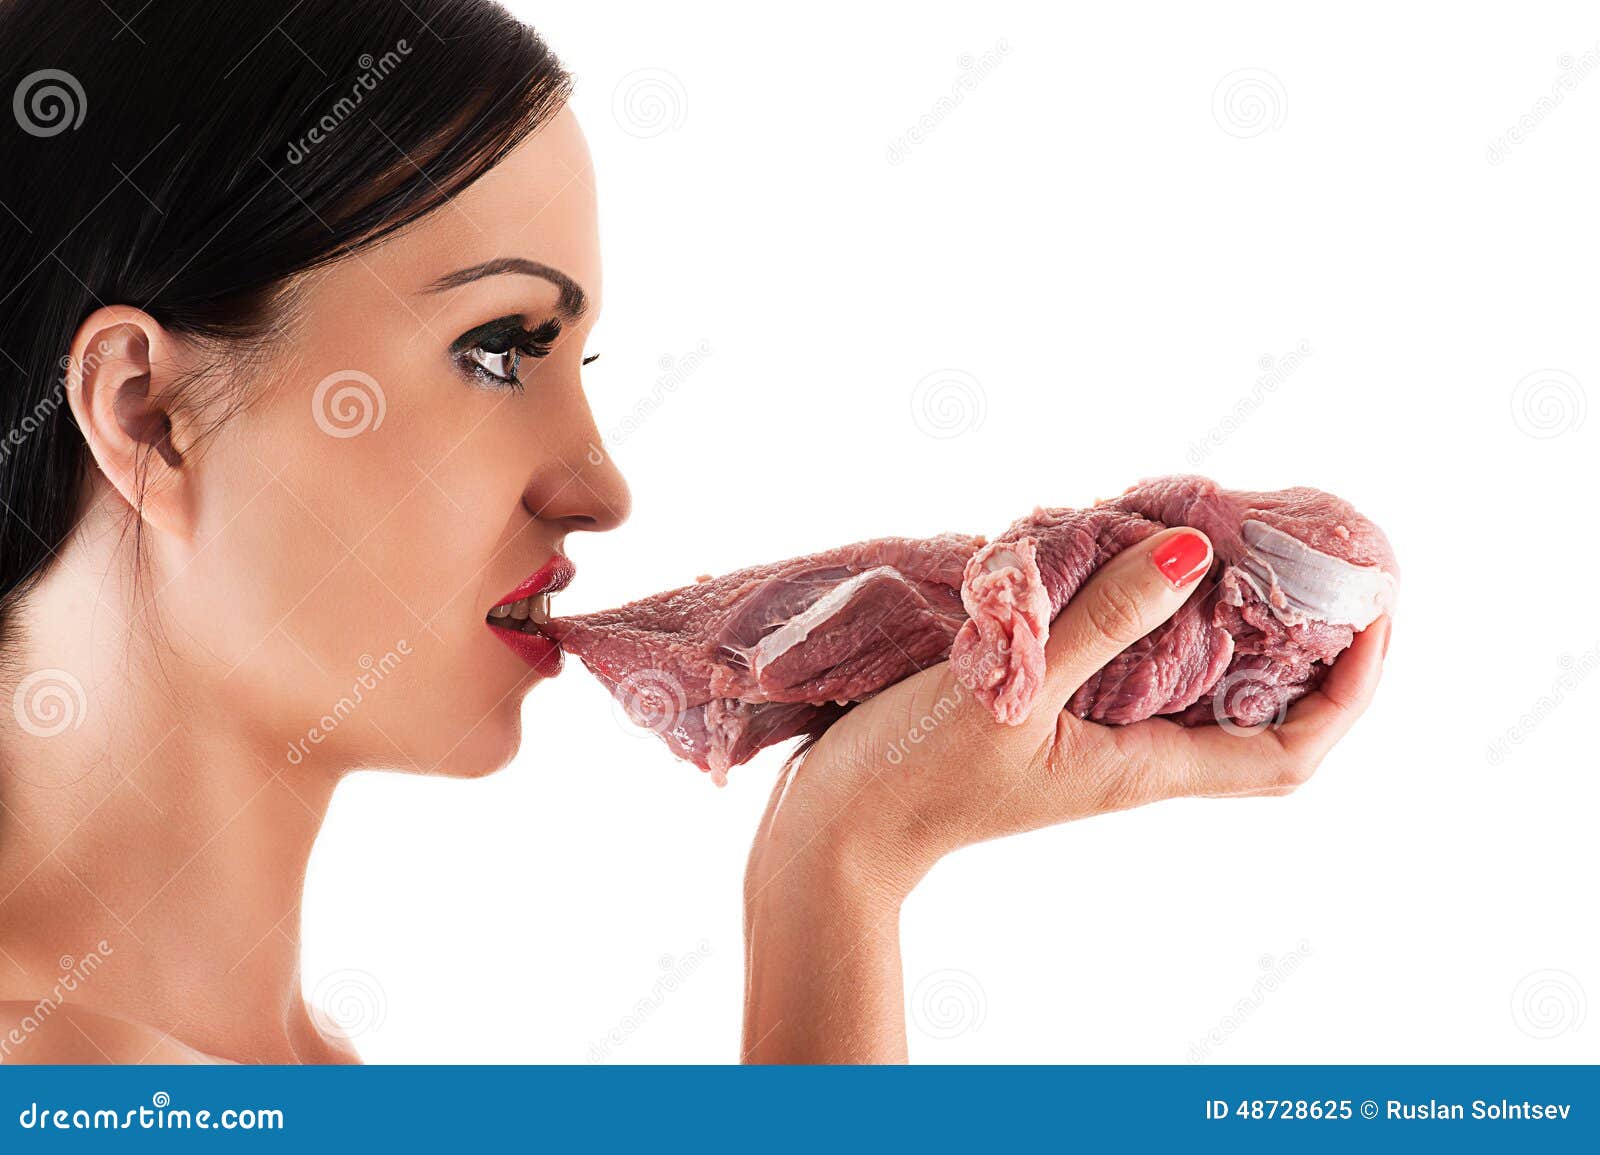 Голодная женщина видео. Девушка ест сырое мясо.